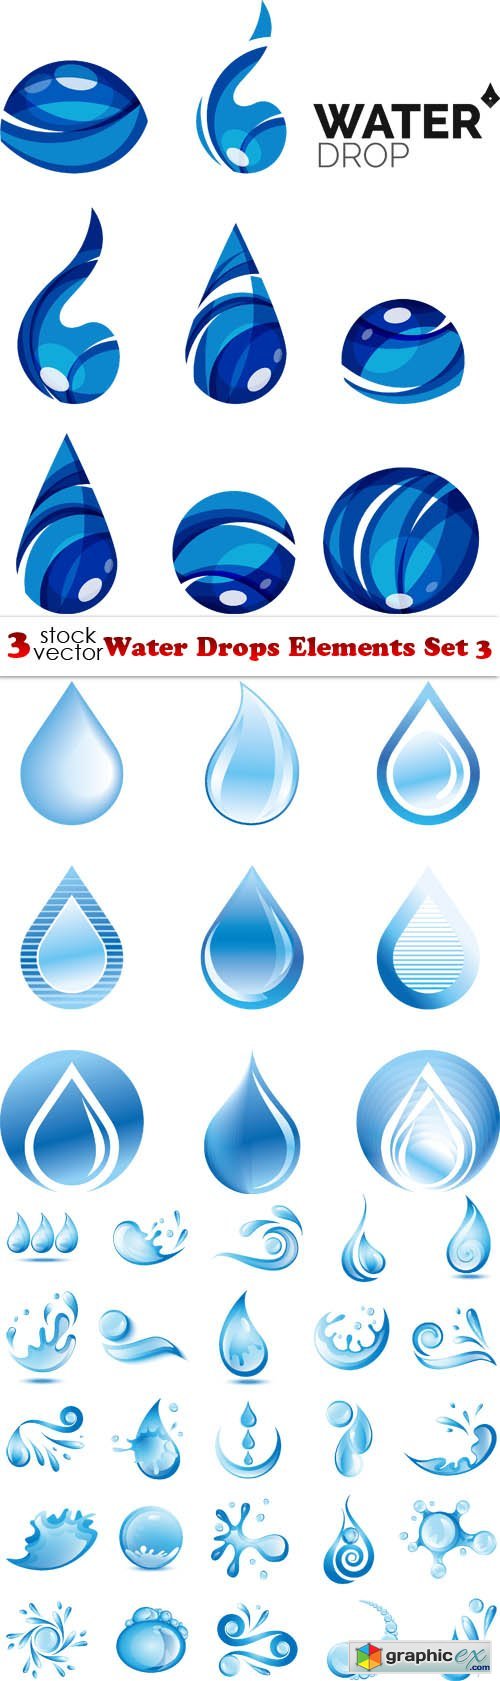 Vectors - Water Drops Elements Set 3